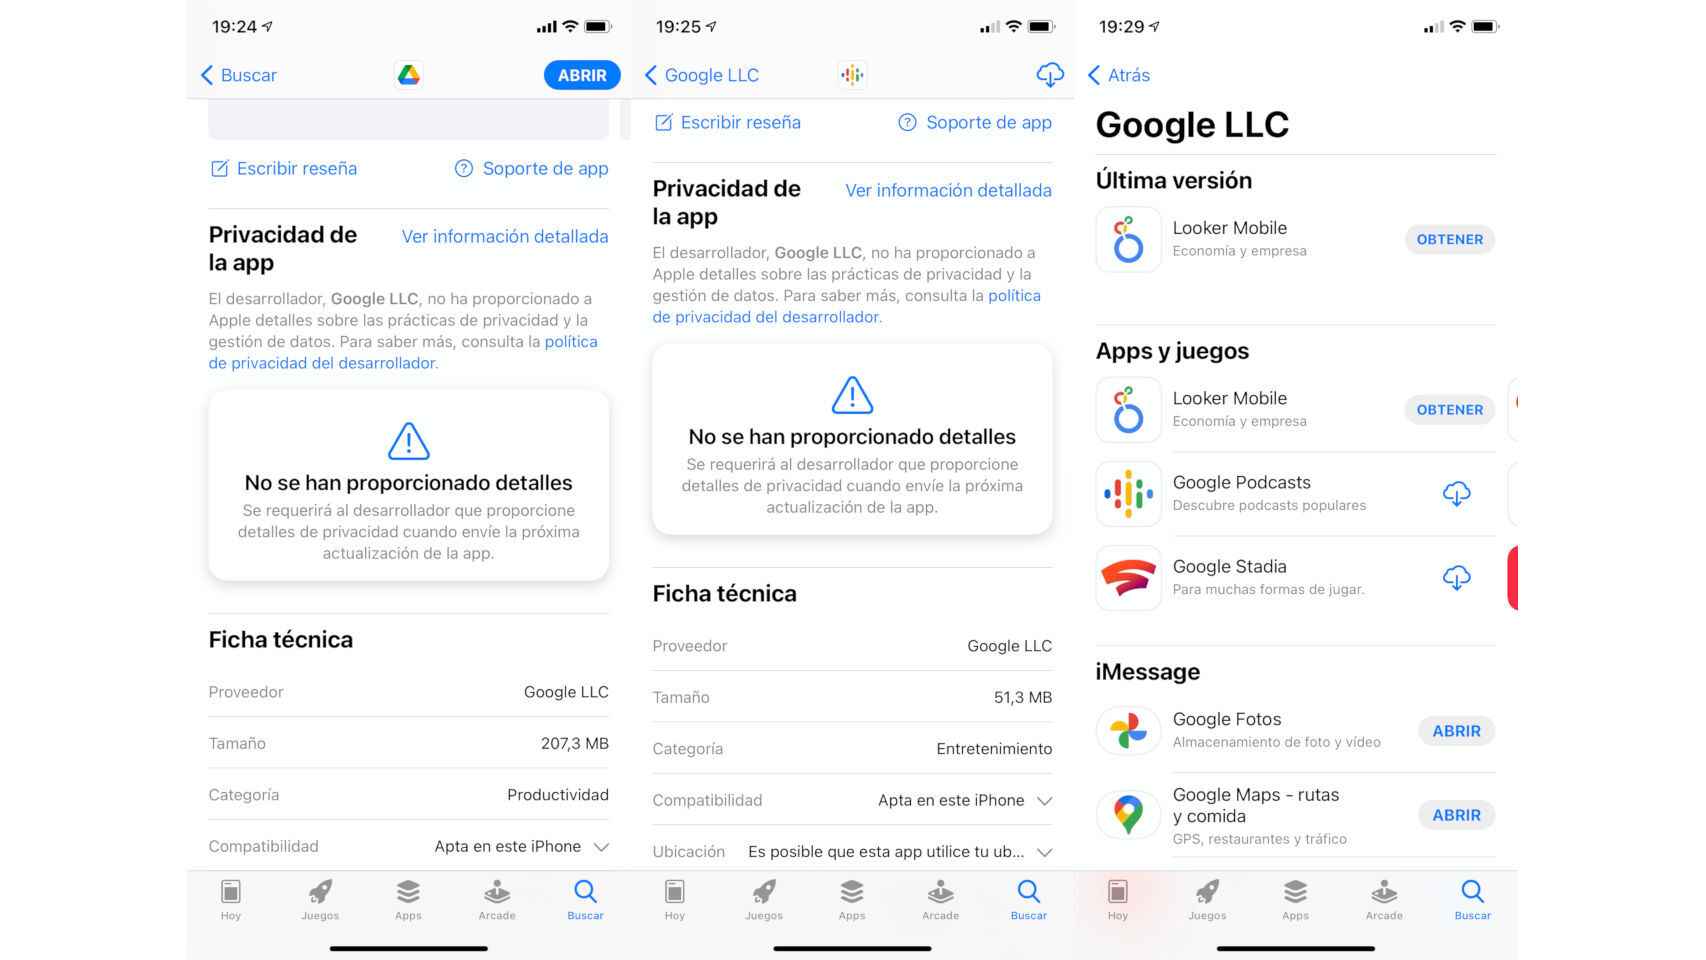 Las apps de Google aún no muestran información de privacidad